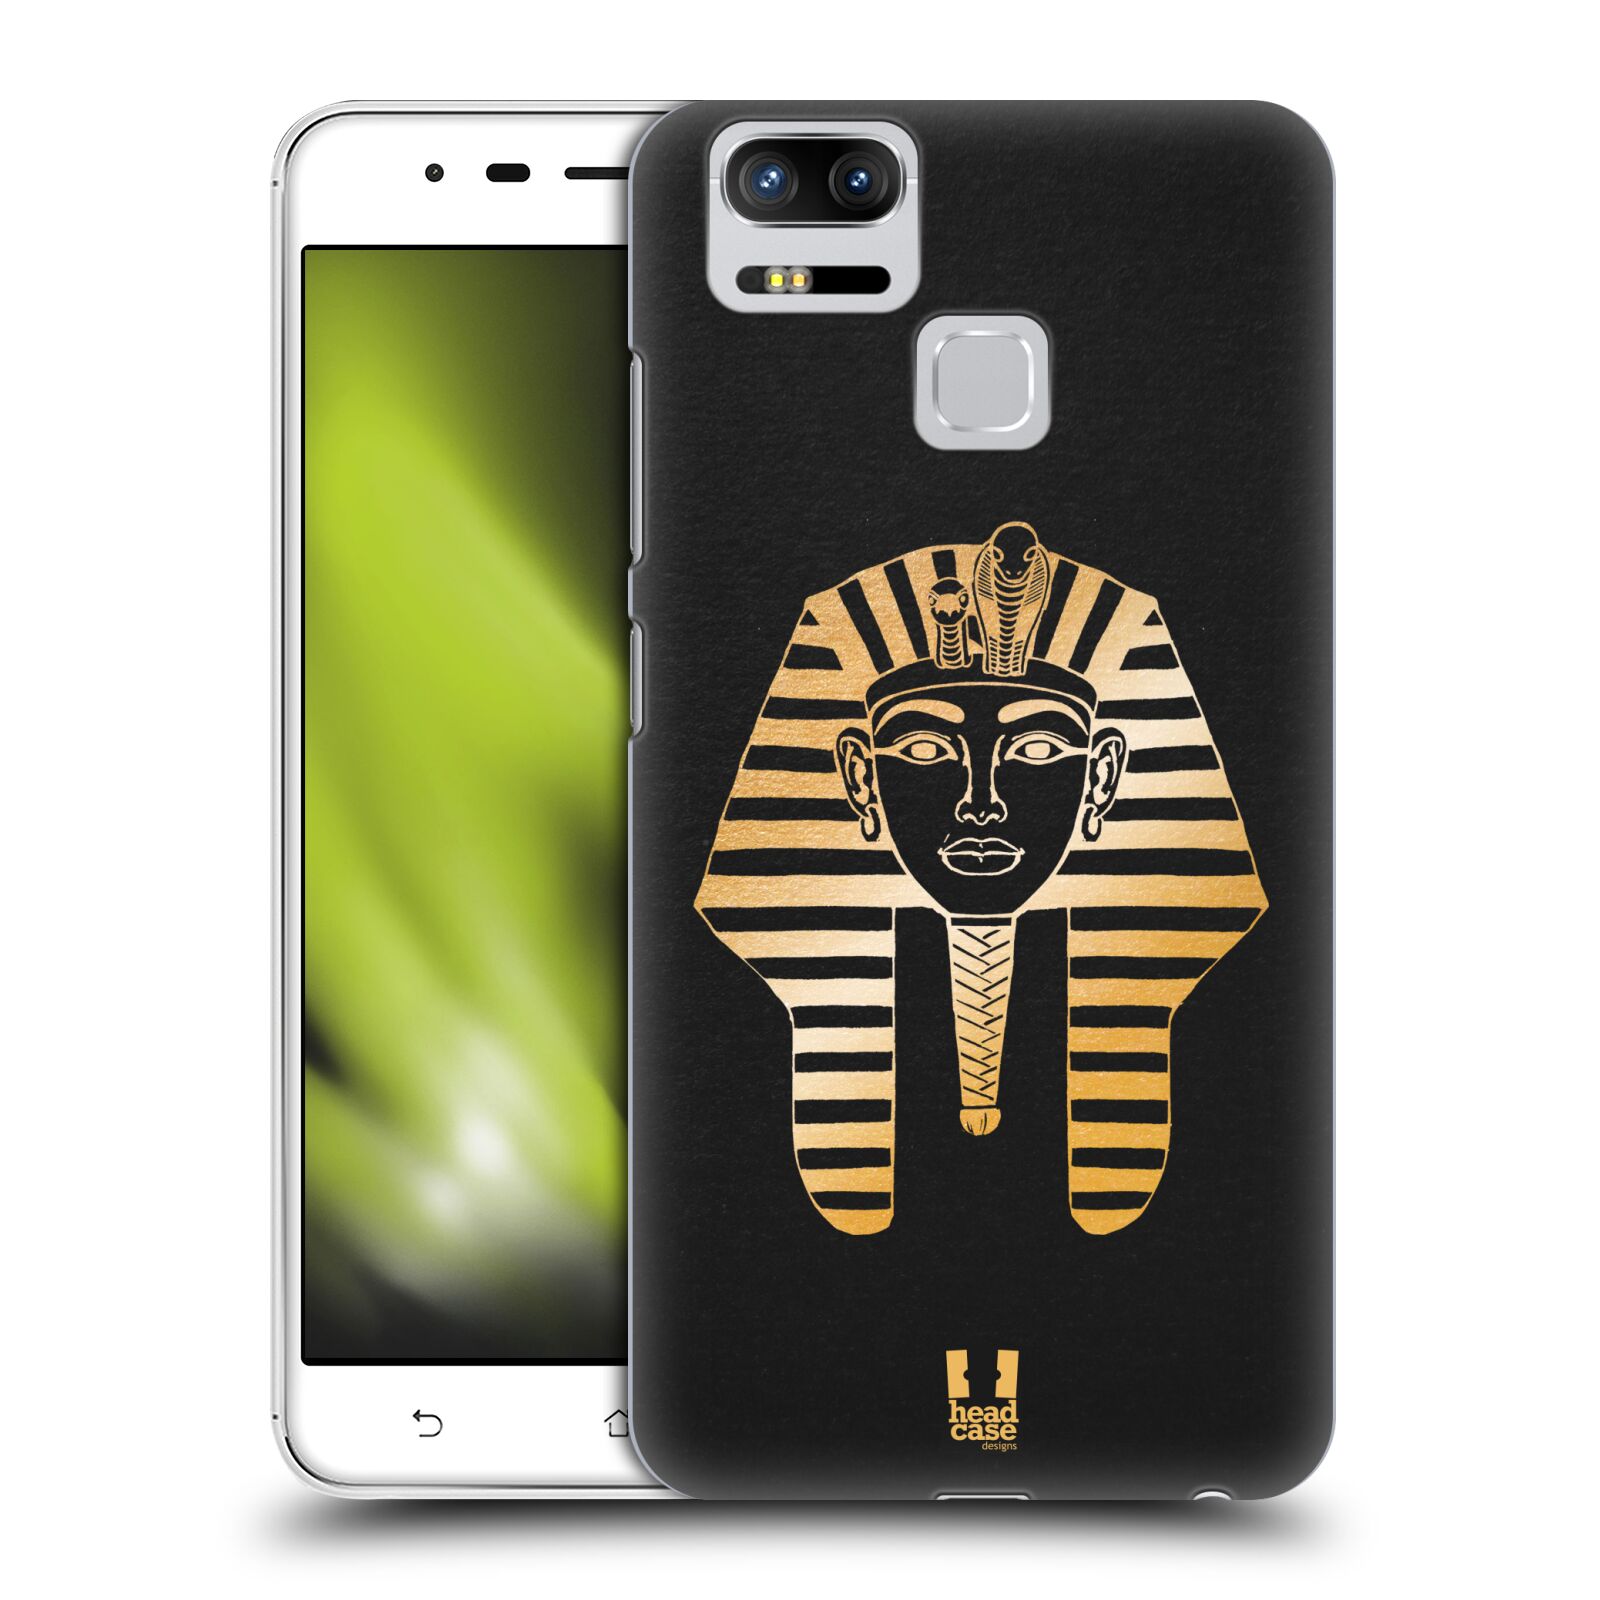 HEAD CASE plastový obal na mobil Asus Zenfone 3 Zoom ZE553KL vzor EGYPT zlatá a černá FARAÓN